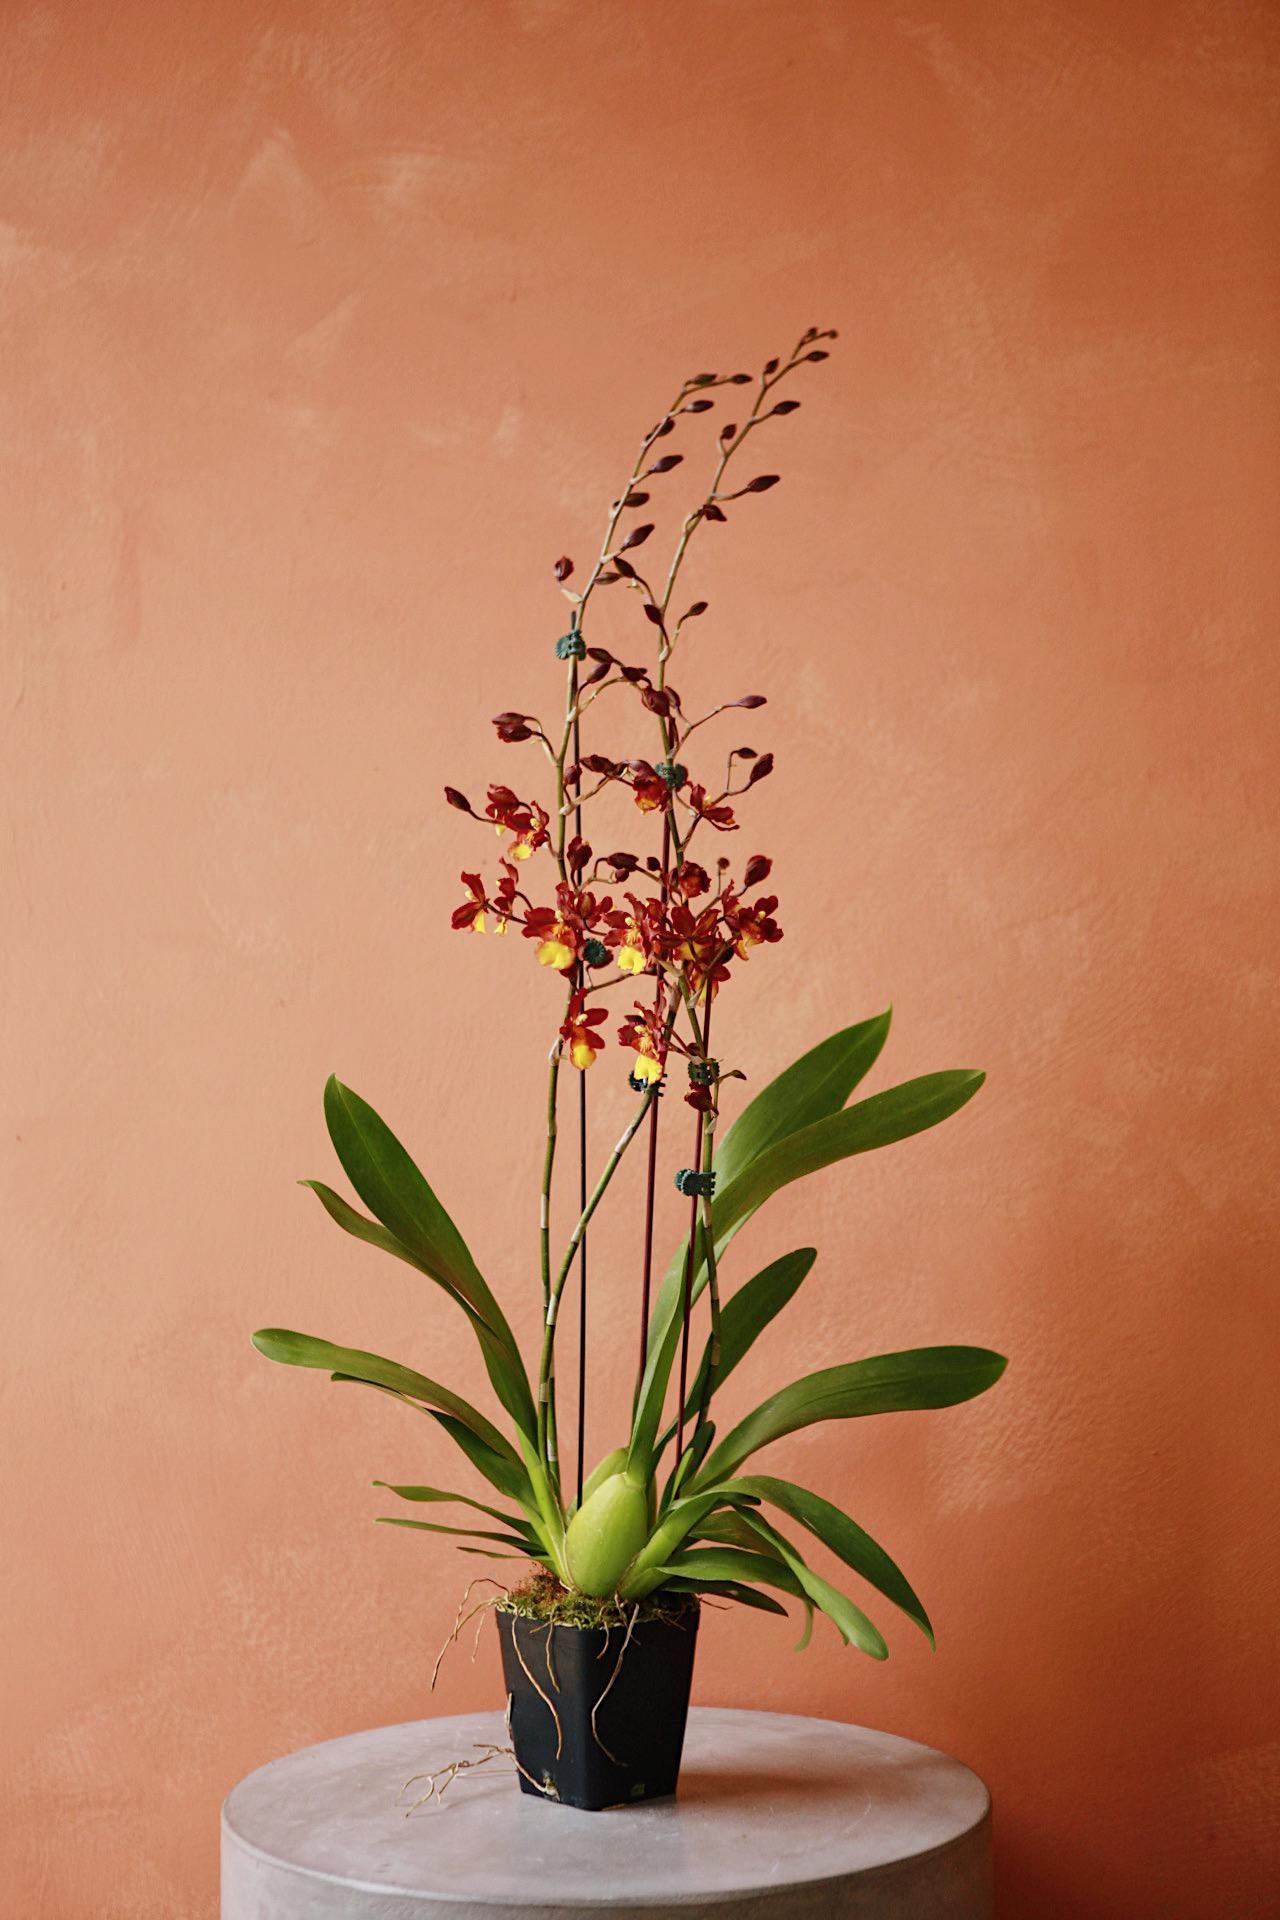 Oncidium/Intergenic Orchid